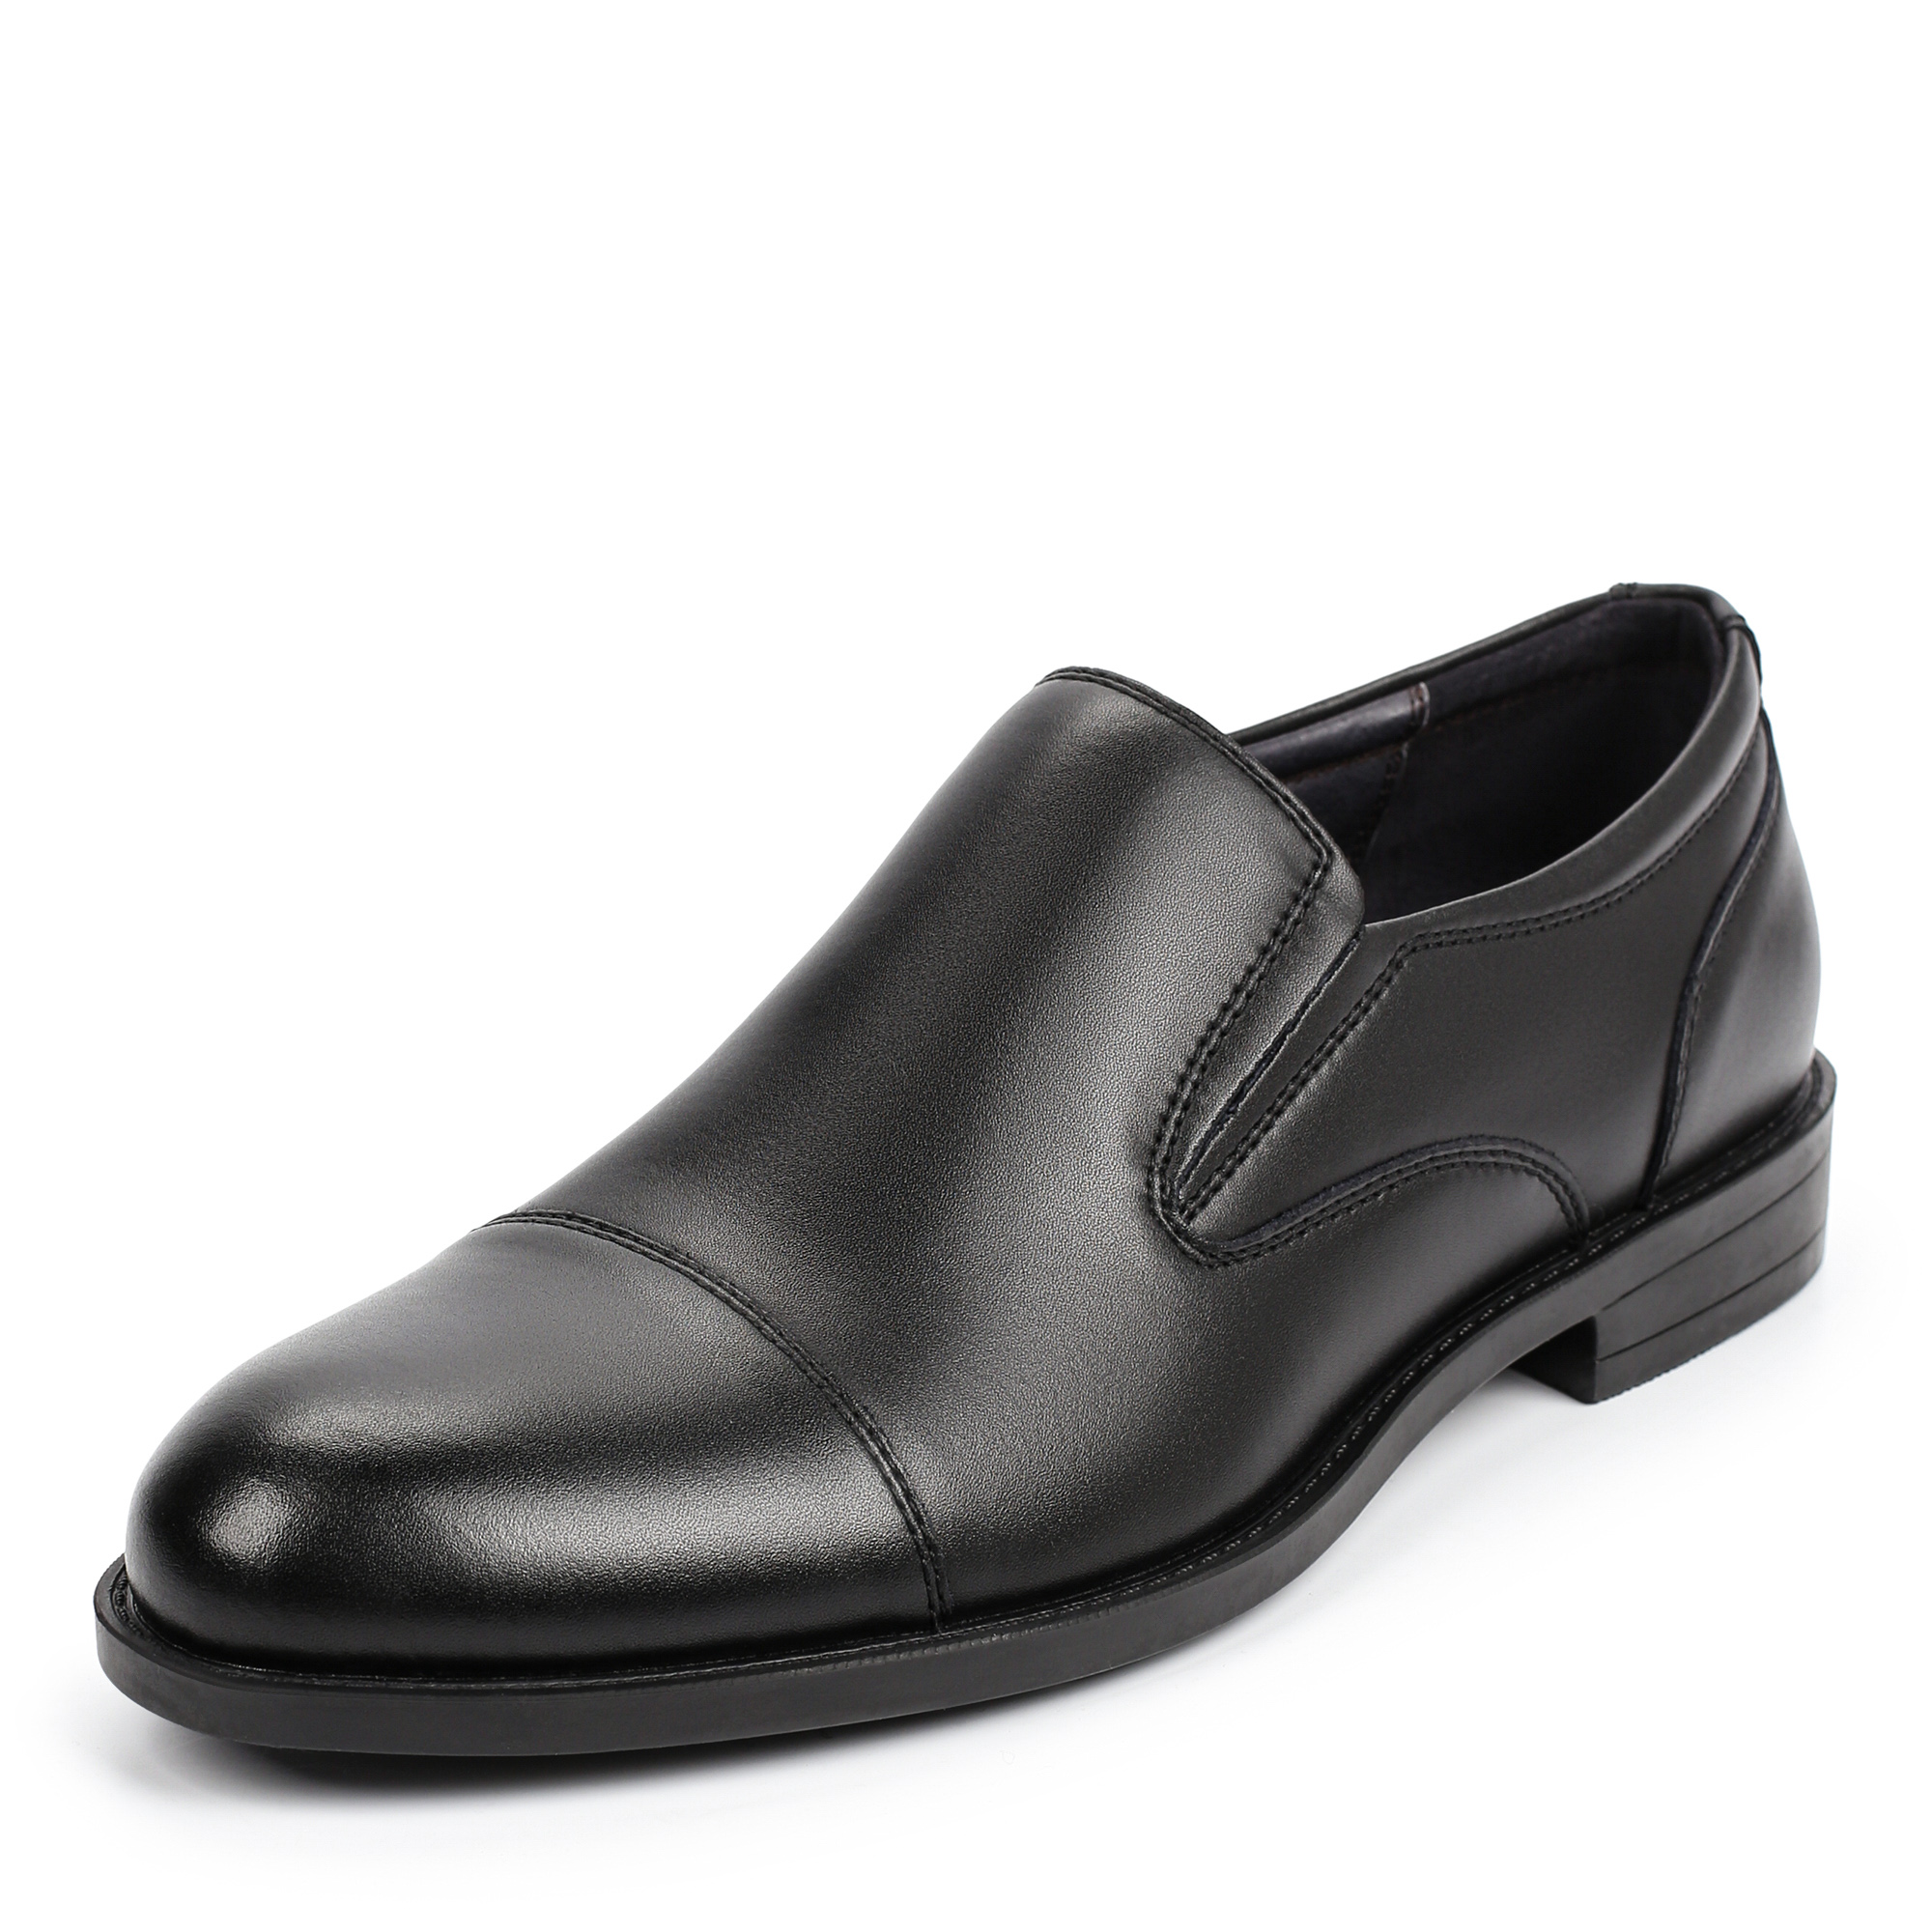 Туфли/полуботинки Thomas Munz 058-231A-1602, цвет черный, размер 40 - фото 2